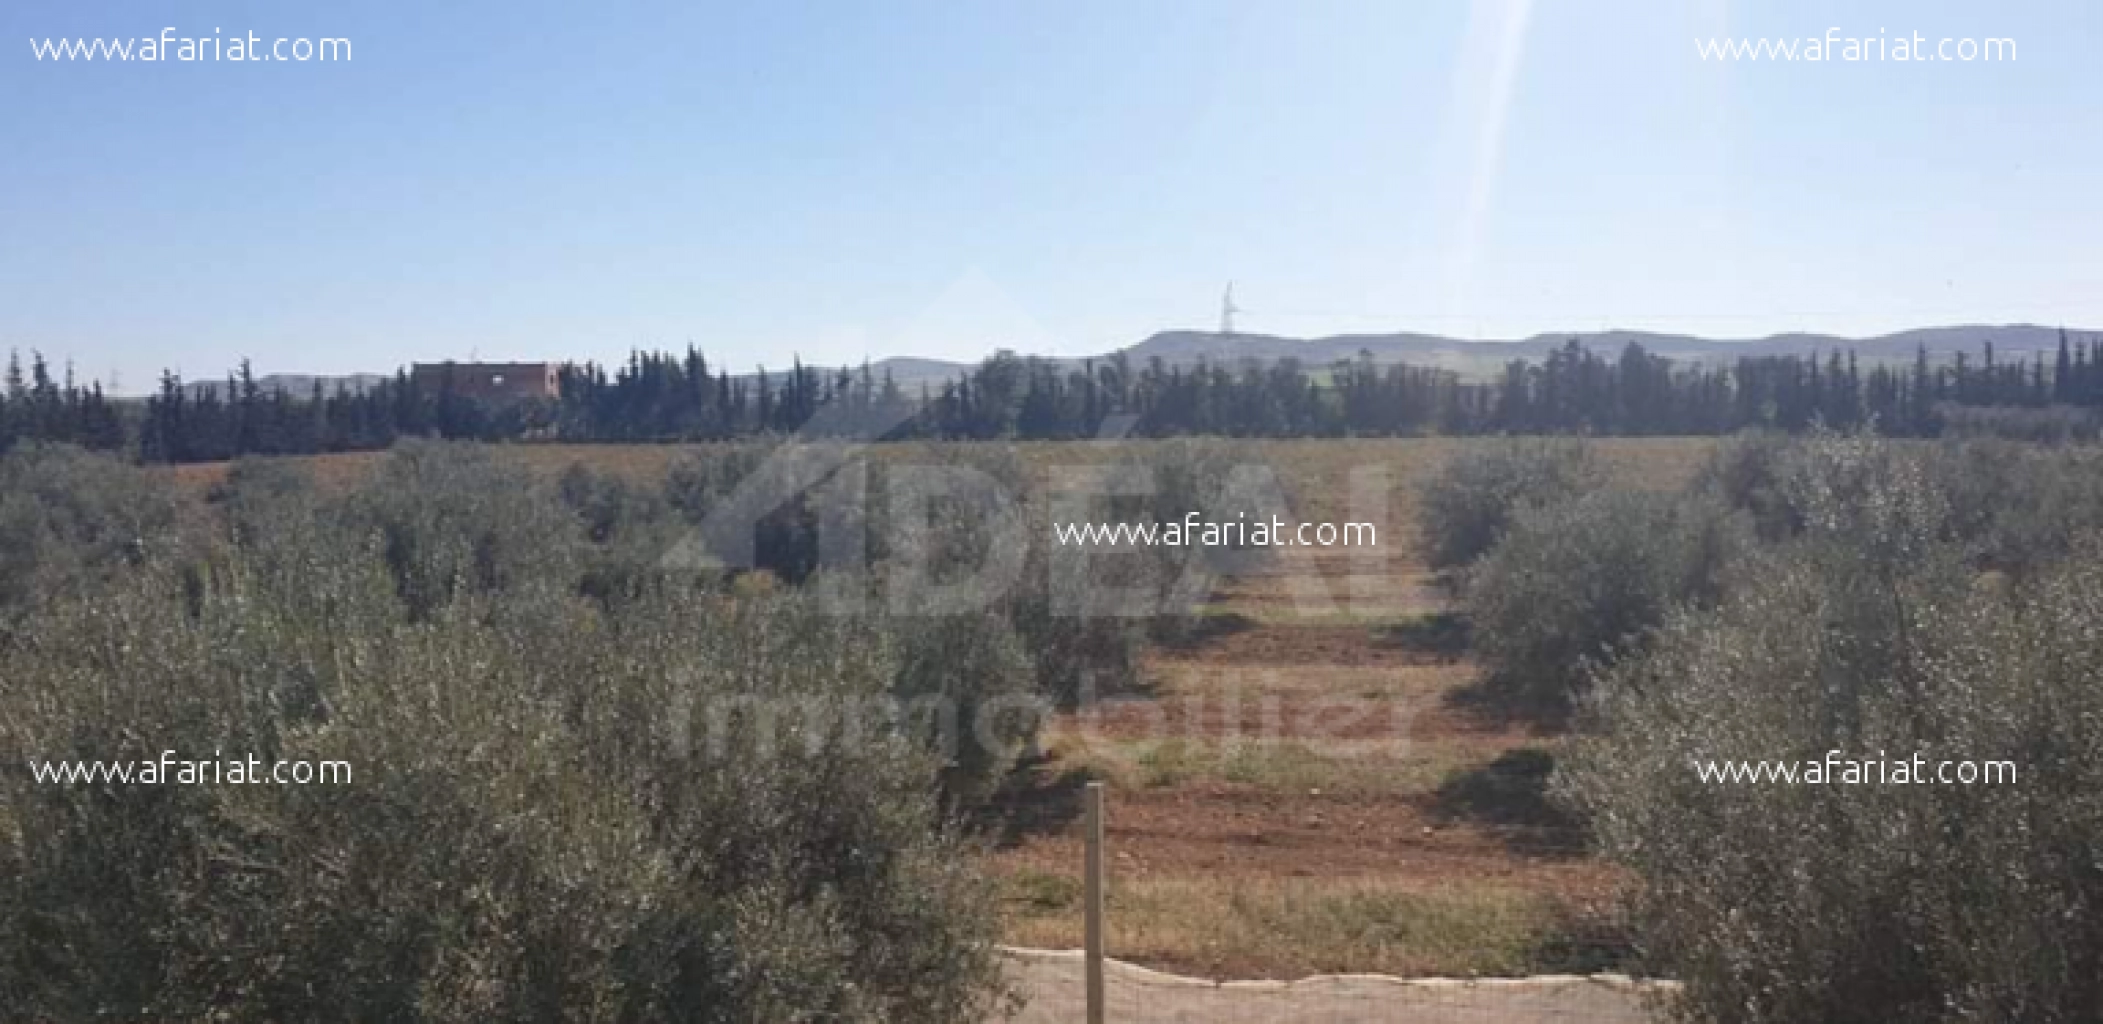 Ferme de 08 hectares à Borj El Amri